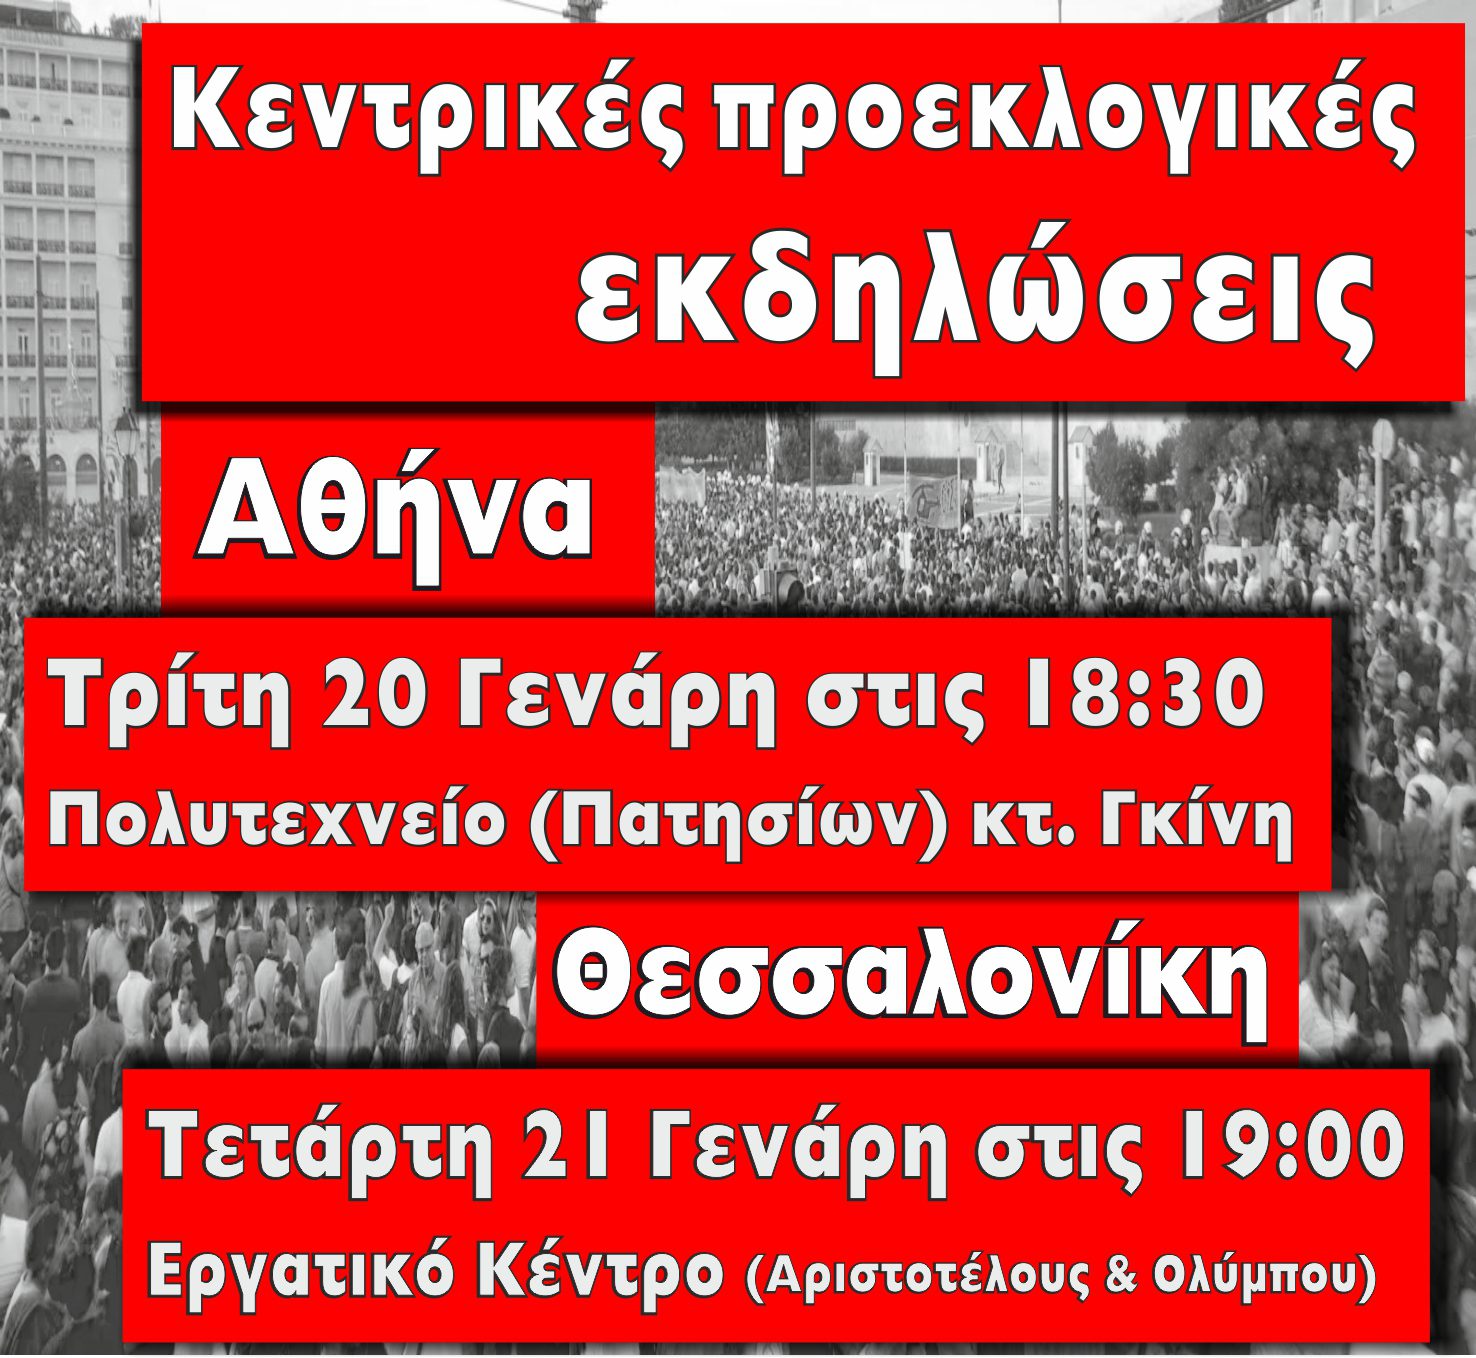 Κεντρικές προεκλογικές εκδηλώσεις της Ο.Κ.Δ.Ε. σε Αθήνα και Θεσσαλονίκη